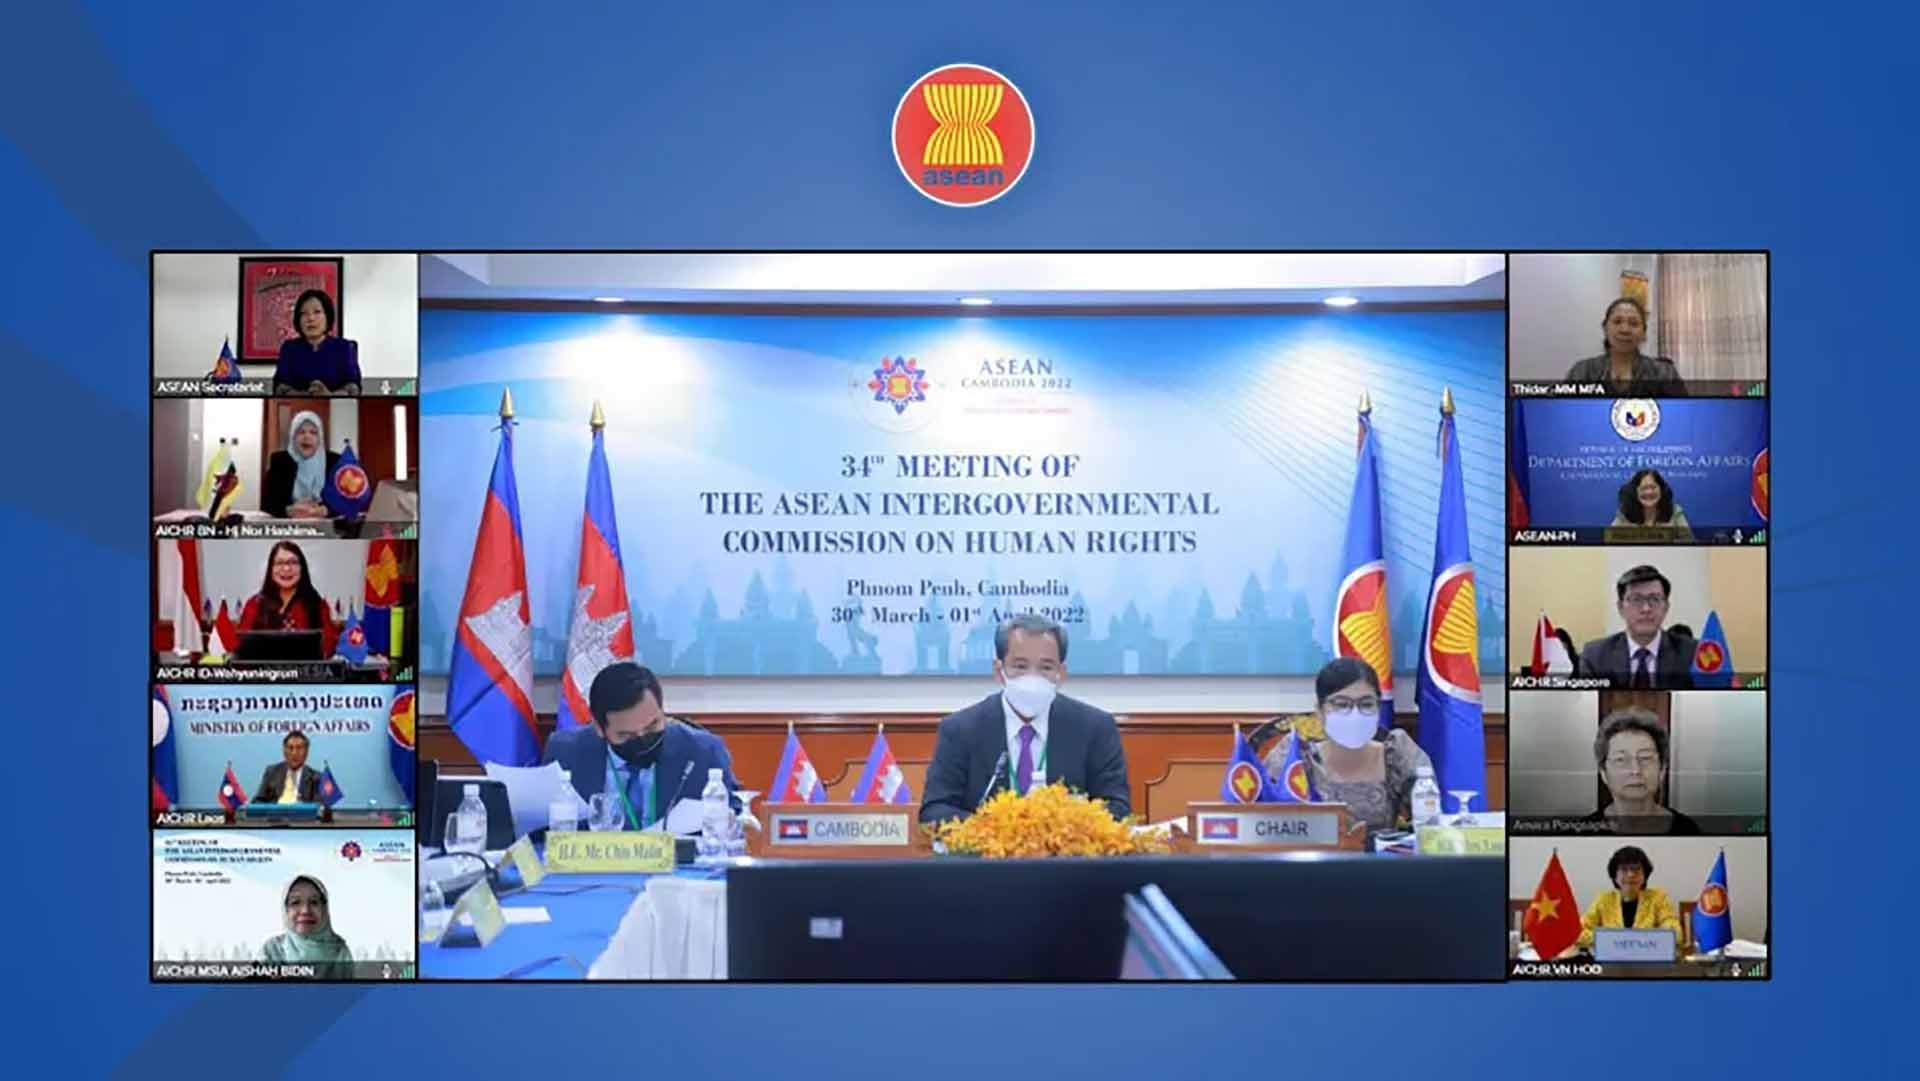 Kỳ họp lần thứ 34 của Ủy ban Liên chính phủ ASEAN về Nhân quyền (AICHR), ngày 30-31/3/2022. (Nguồn: aichr.org)